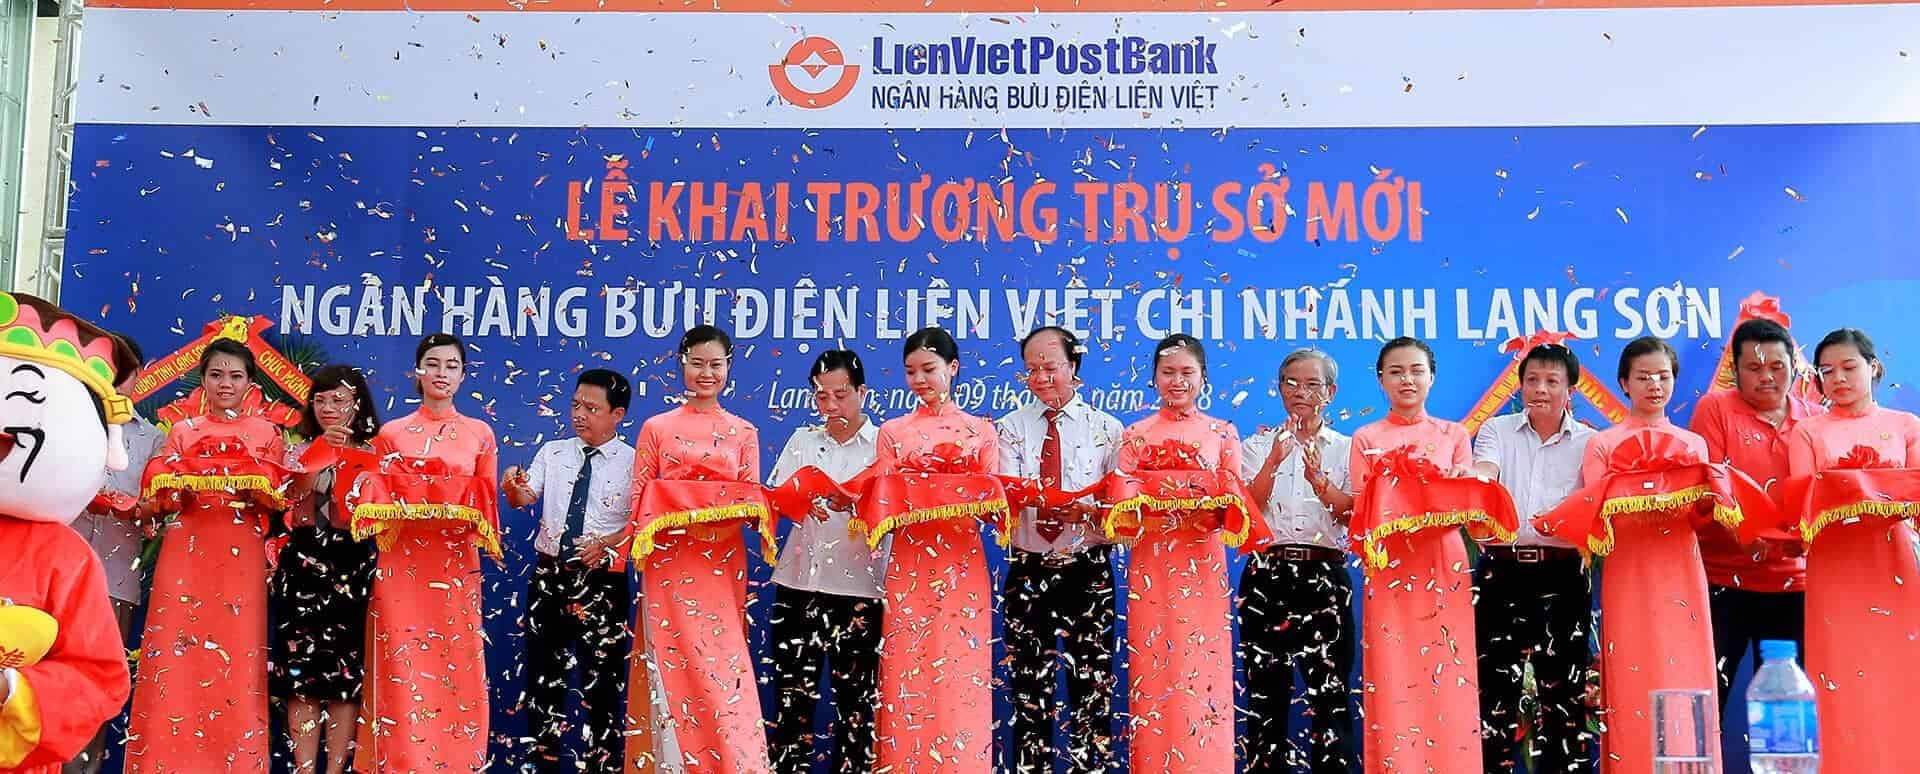 Lễ khai trương trụ sở mới Ngân hàng Bưu Điện Liên việt chi nhánh Lạng Sơn